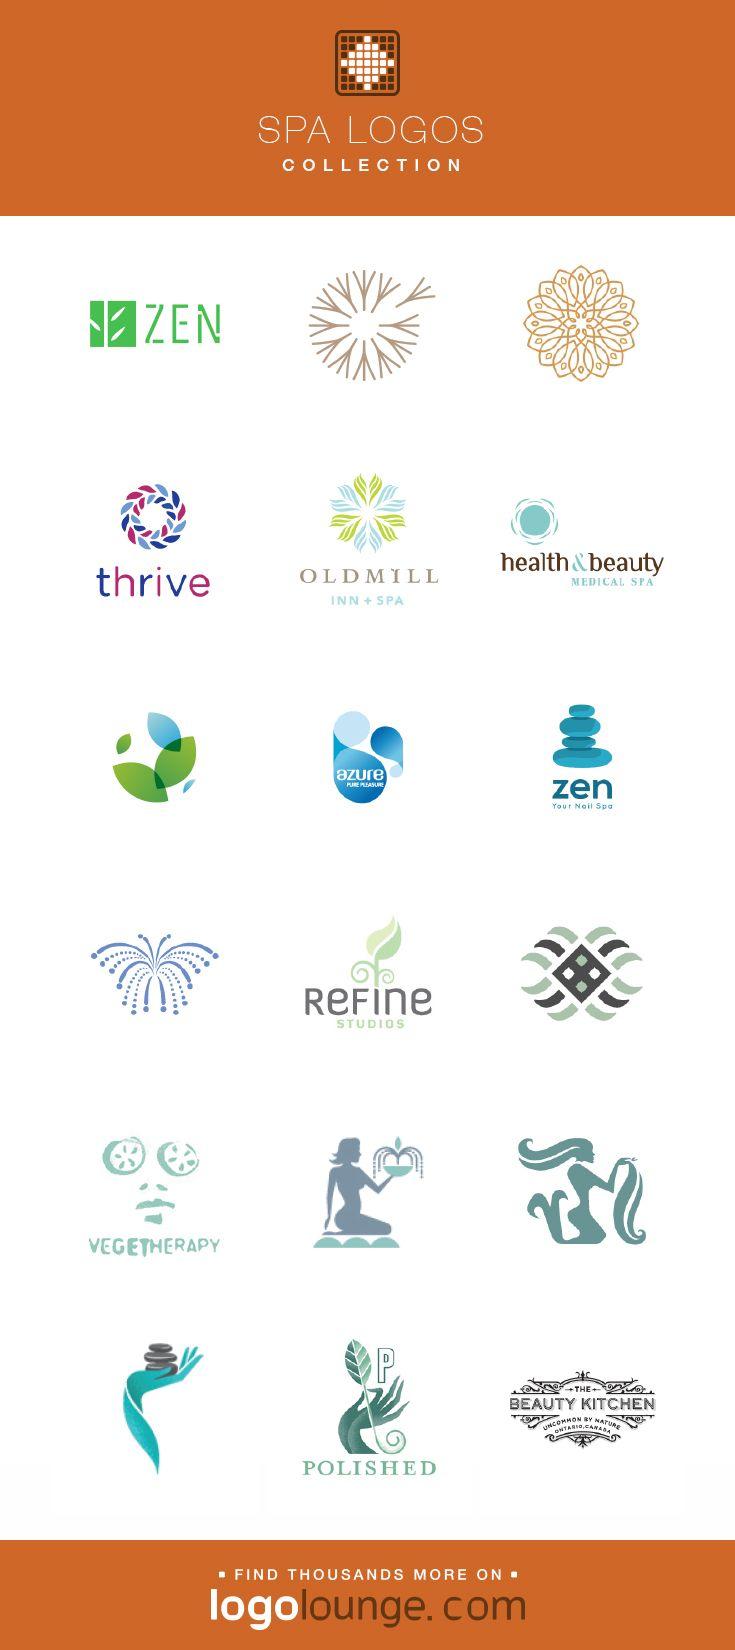 Zen Health Logo - Logo Collection : Spa vector logo designs. Zen, peace, fountain